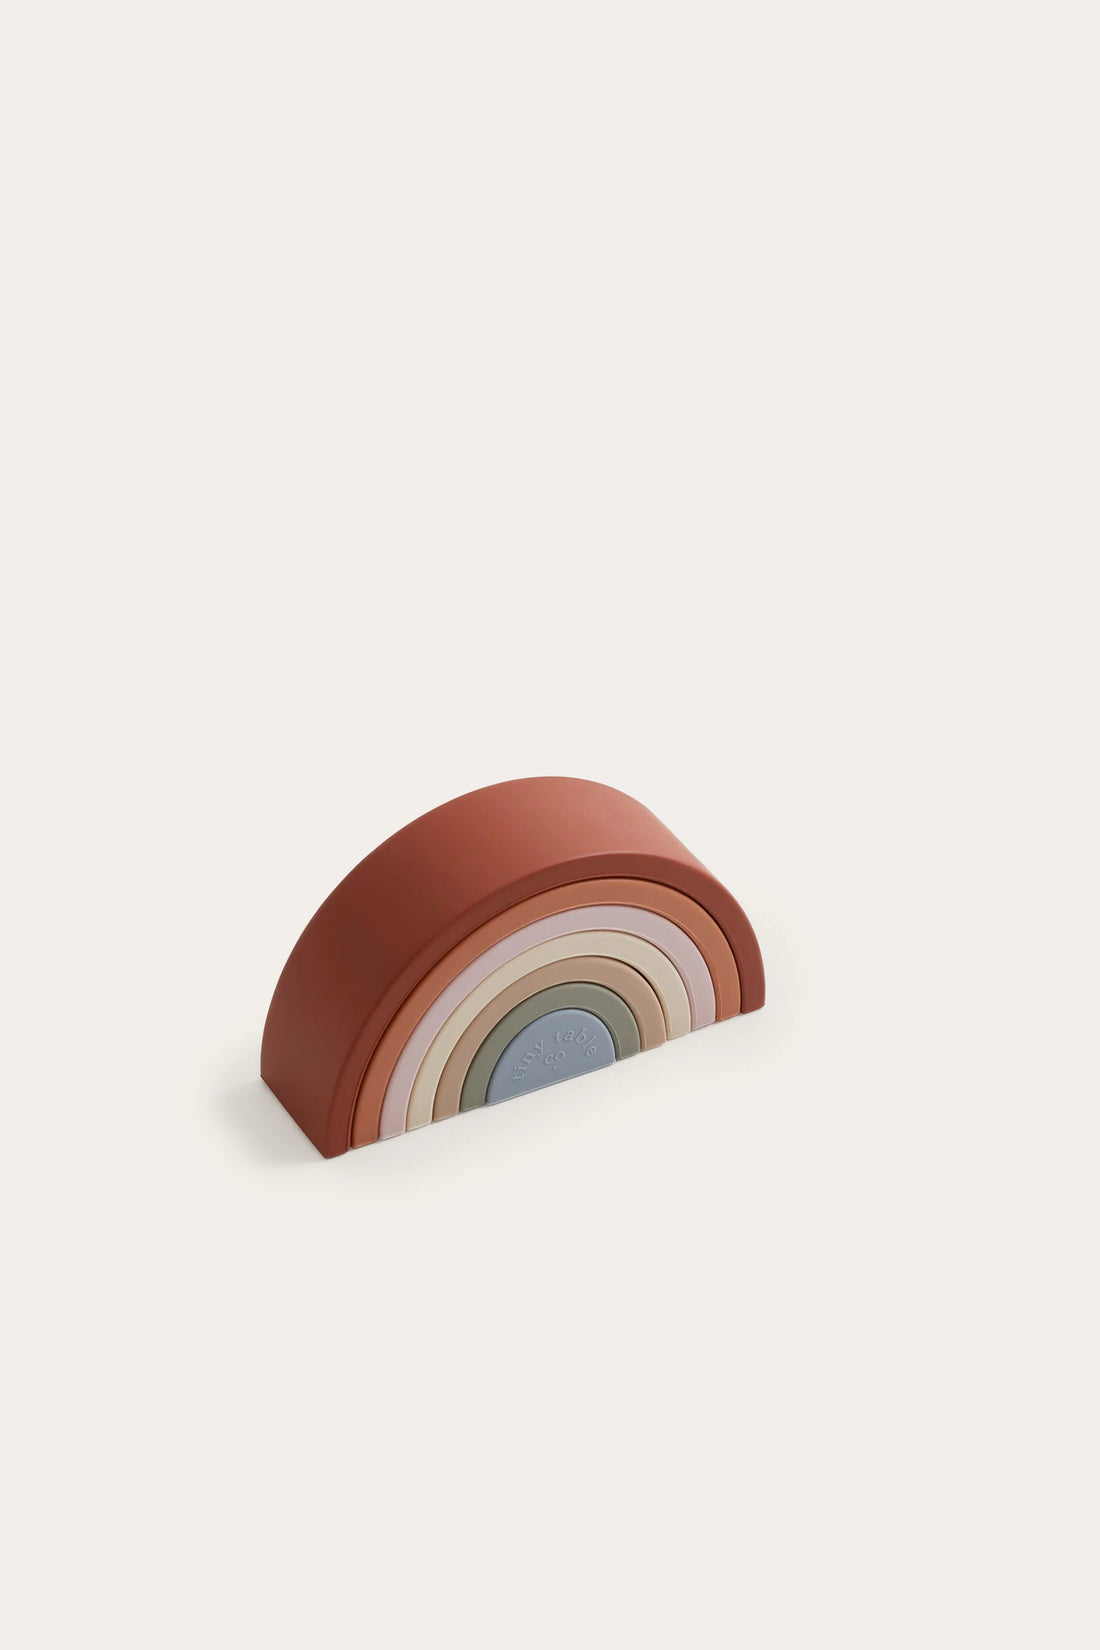 Tiny Table Co. | Rainbow Stacker DISPLAY STOCK